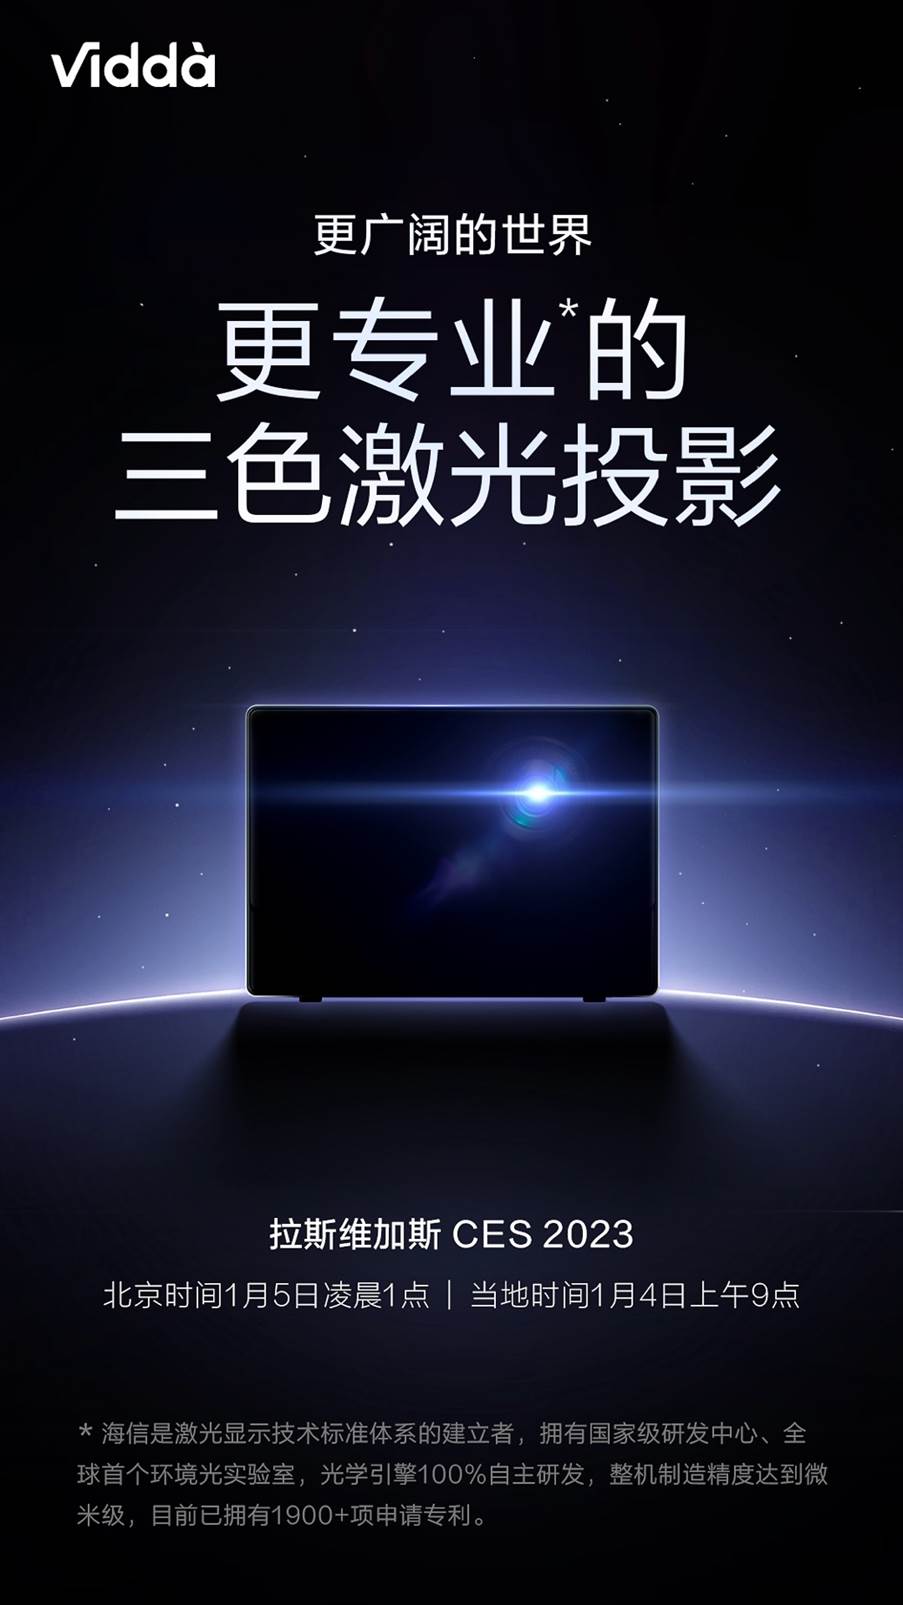 Vidda官微海报透露：海信或将于CES 2023发布三色激光投影新品 智能公会